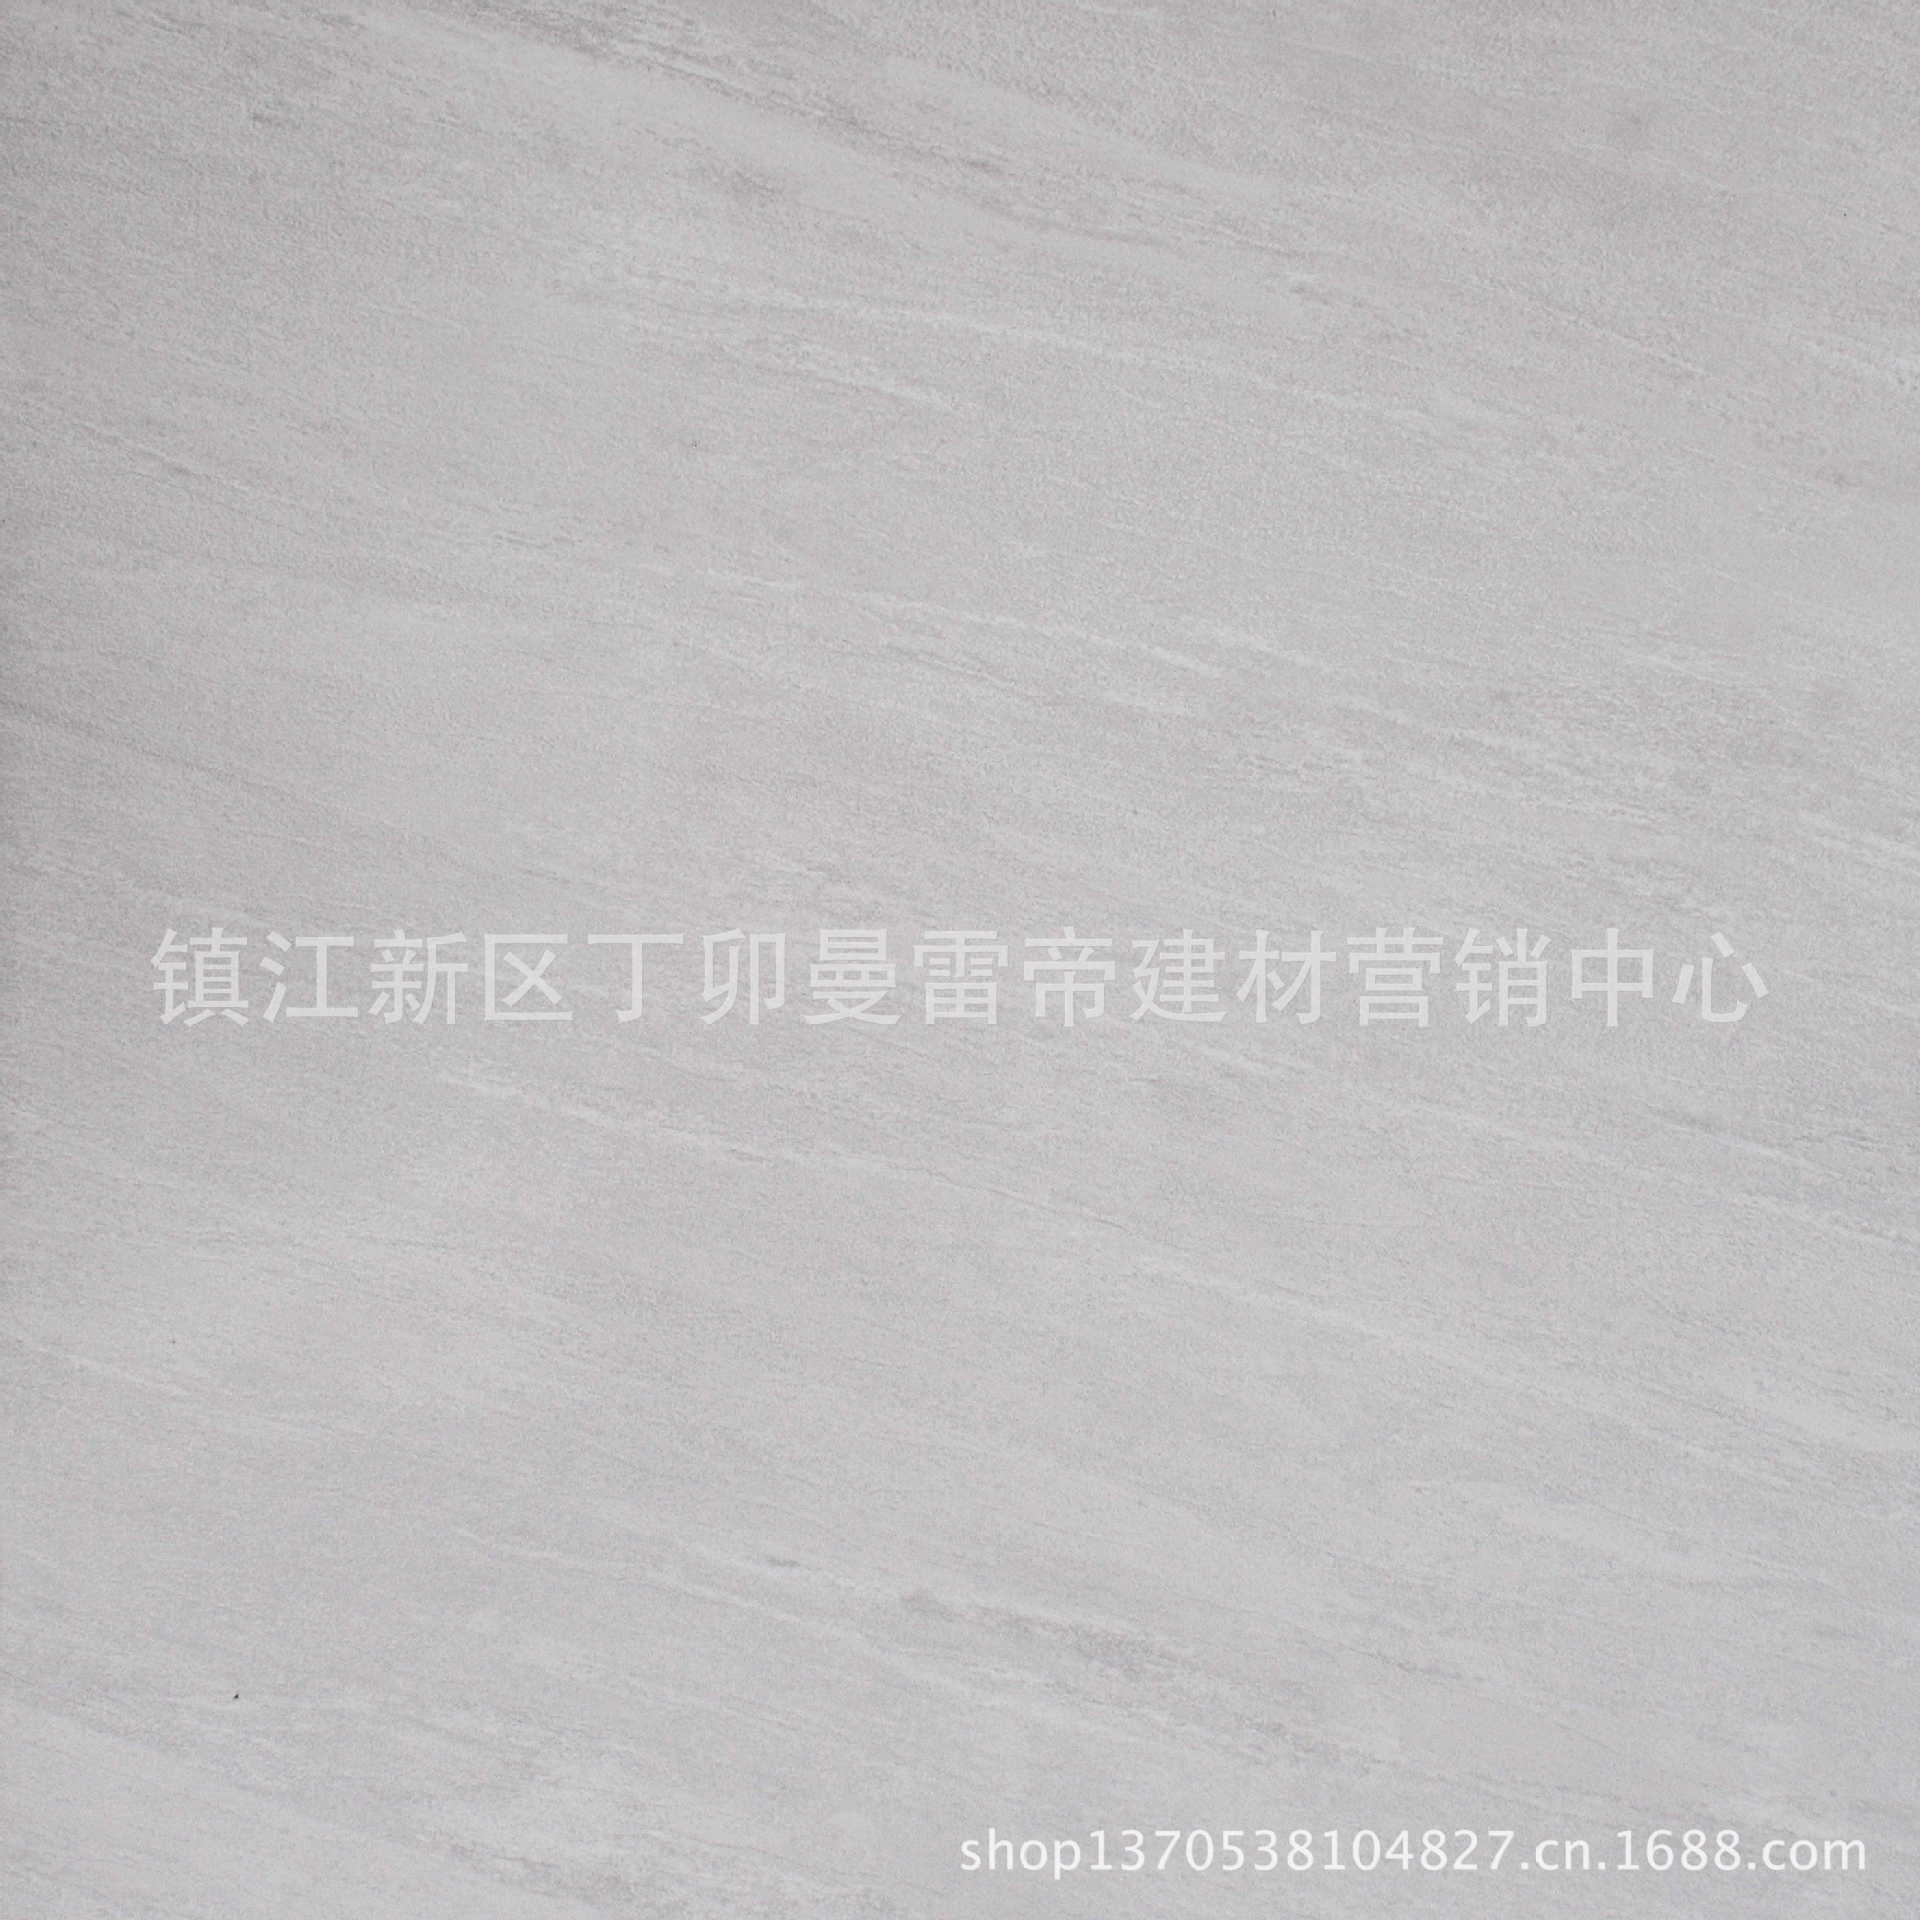 【镇江曼联磁砖 供应优质瓷砖新600 品牌产品